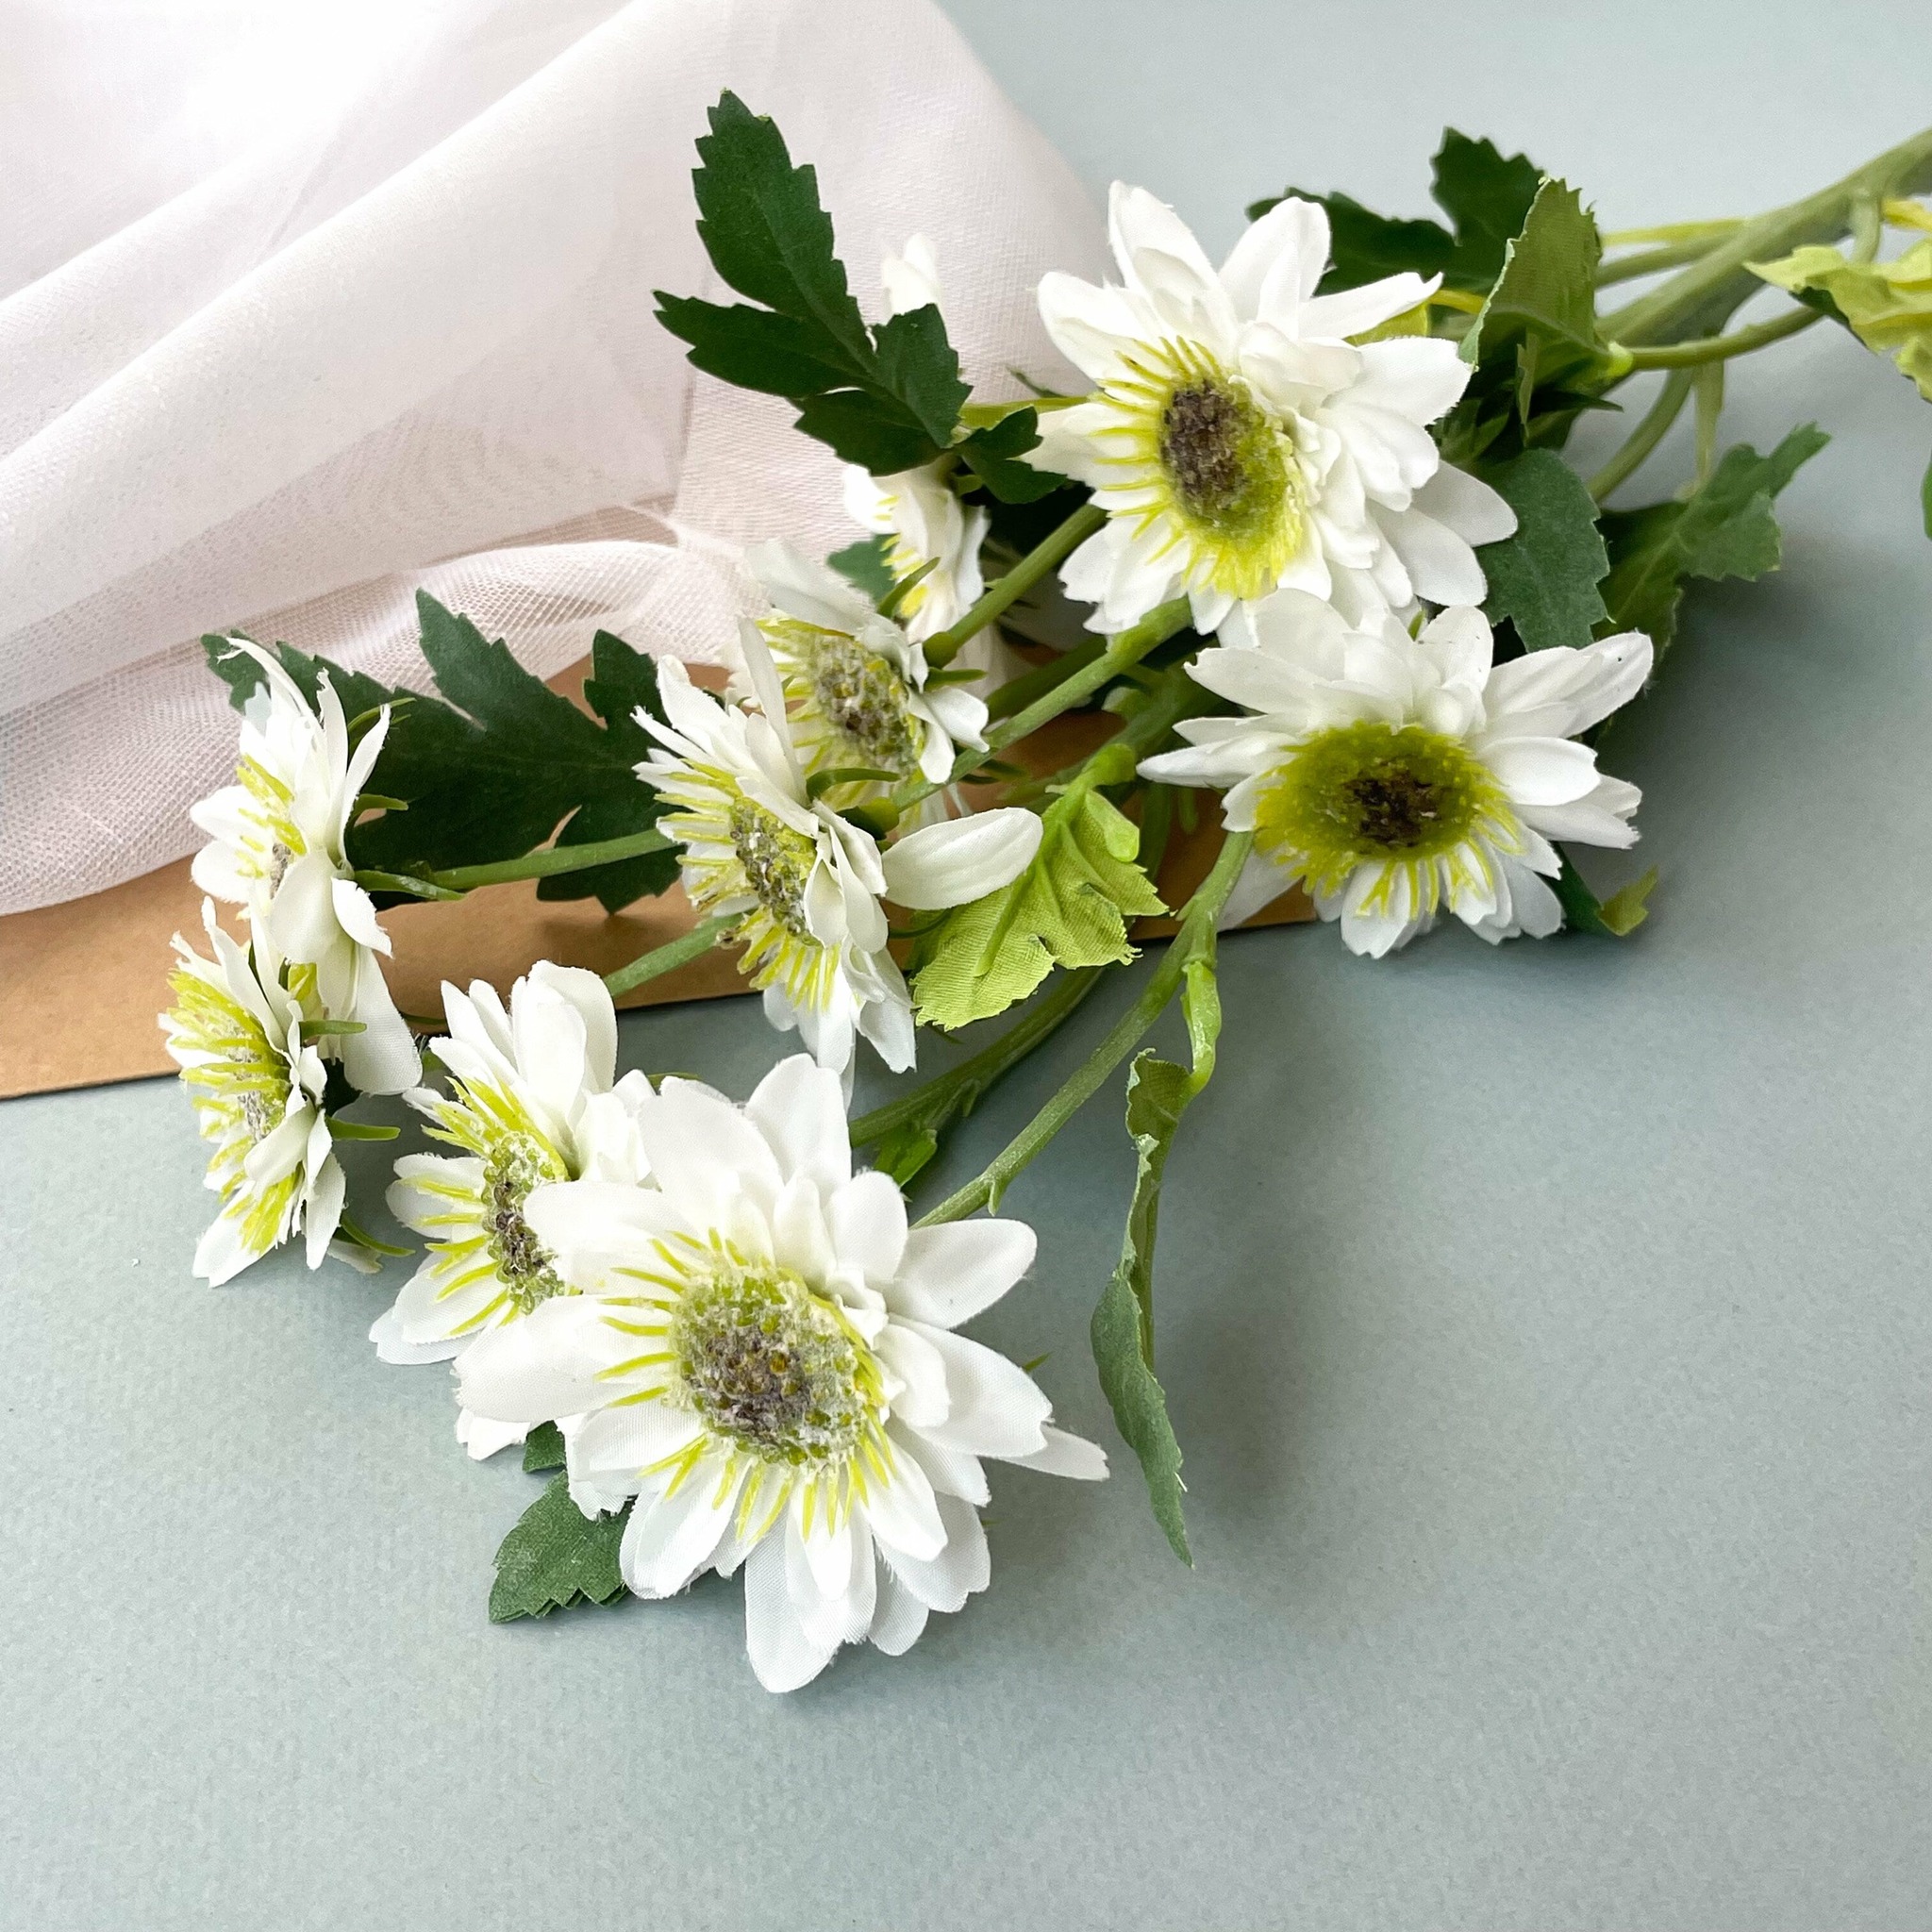 Ювелирный «букет» невесты: принципы выбора драгоценностей для свадебного лука